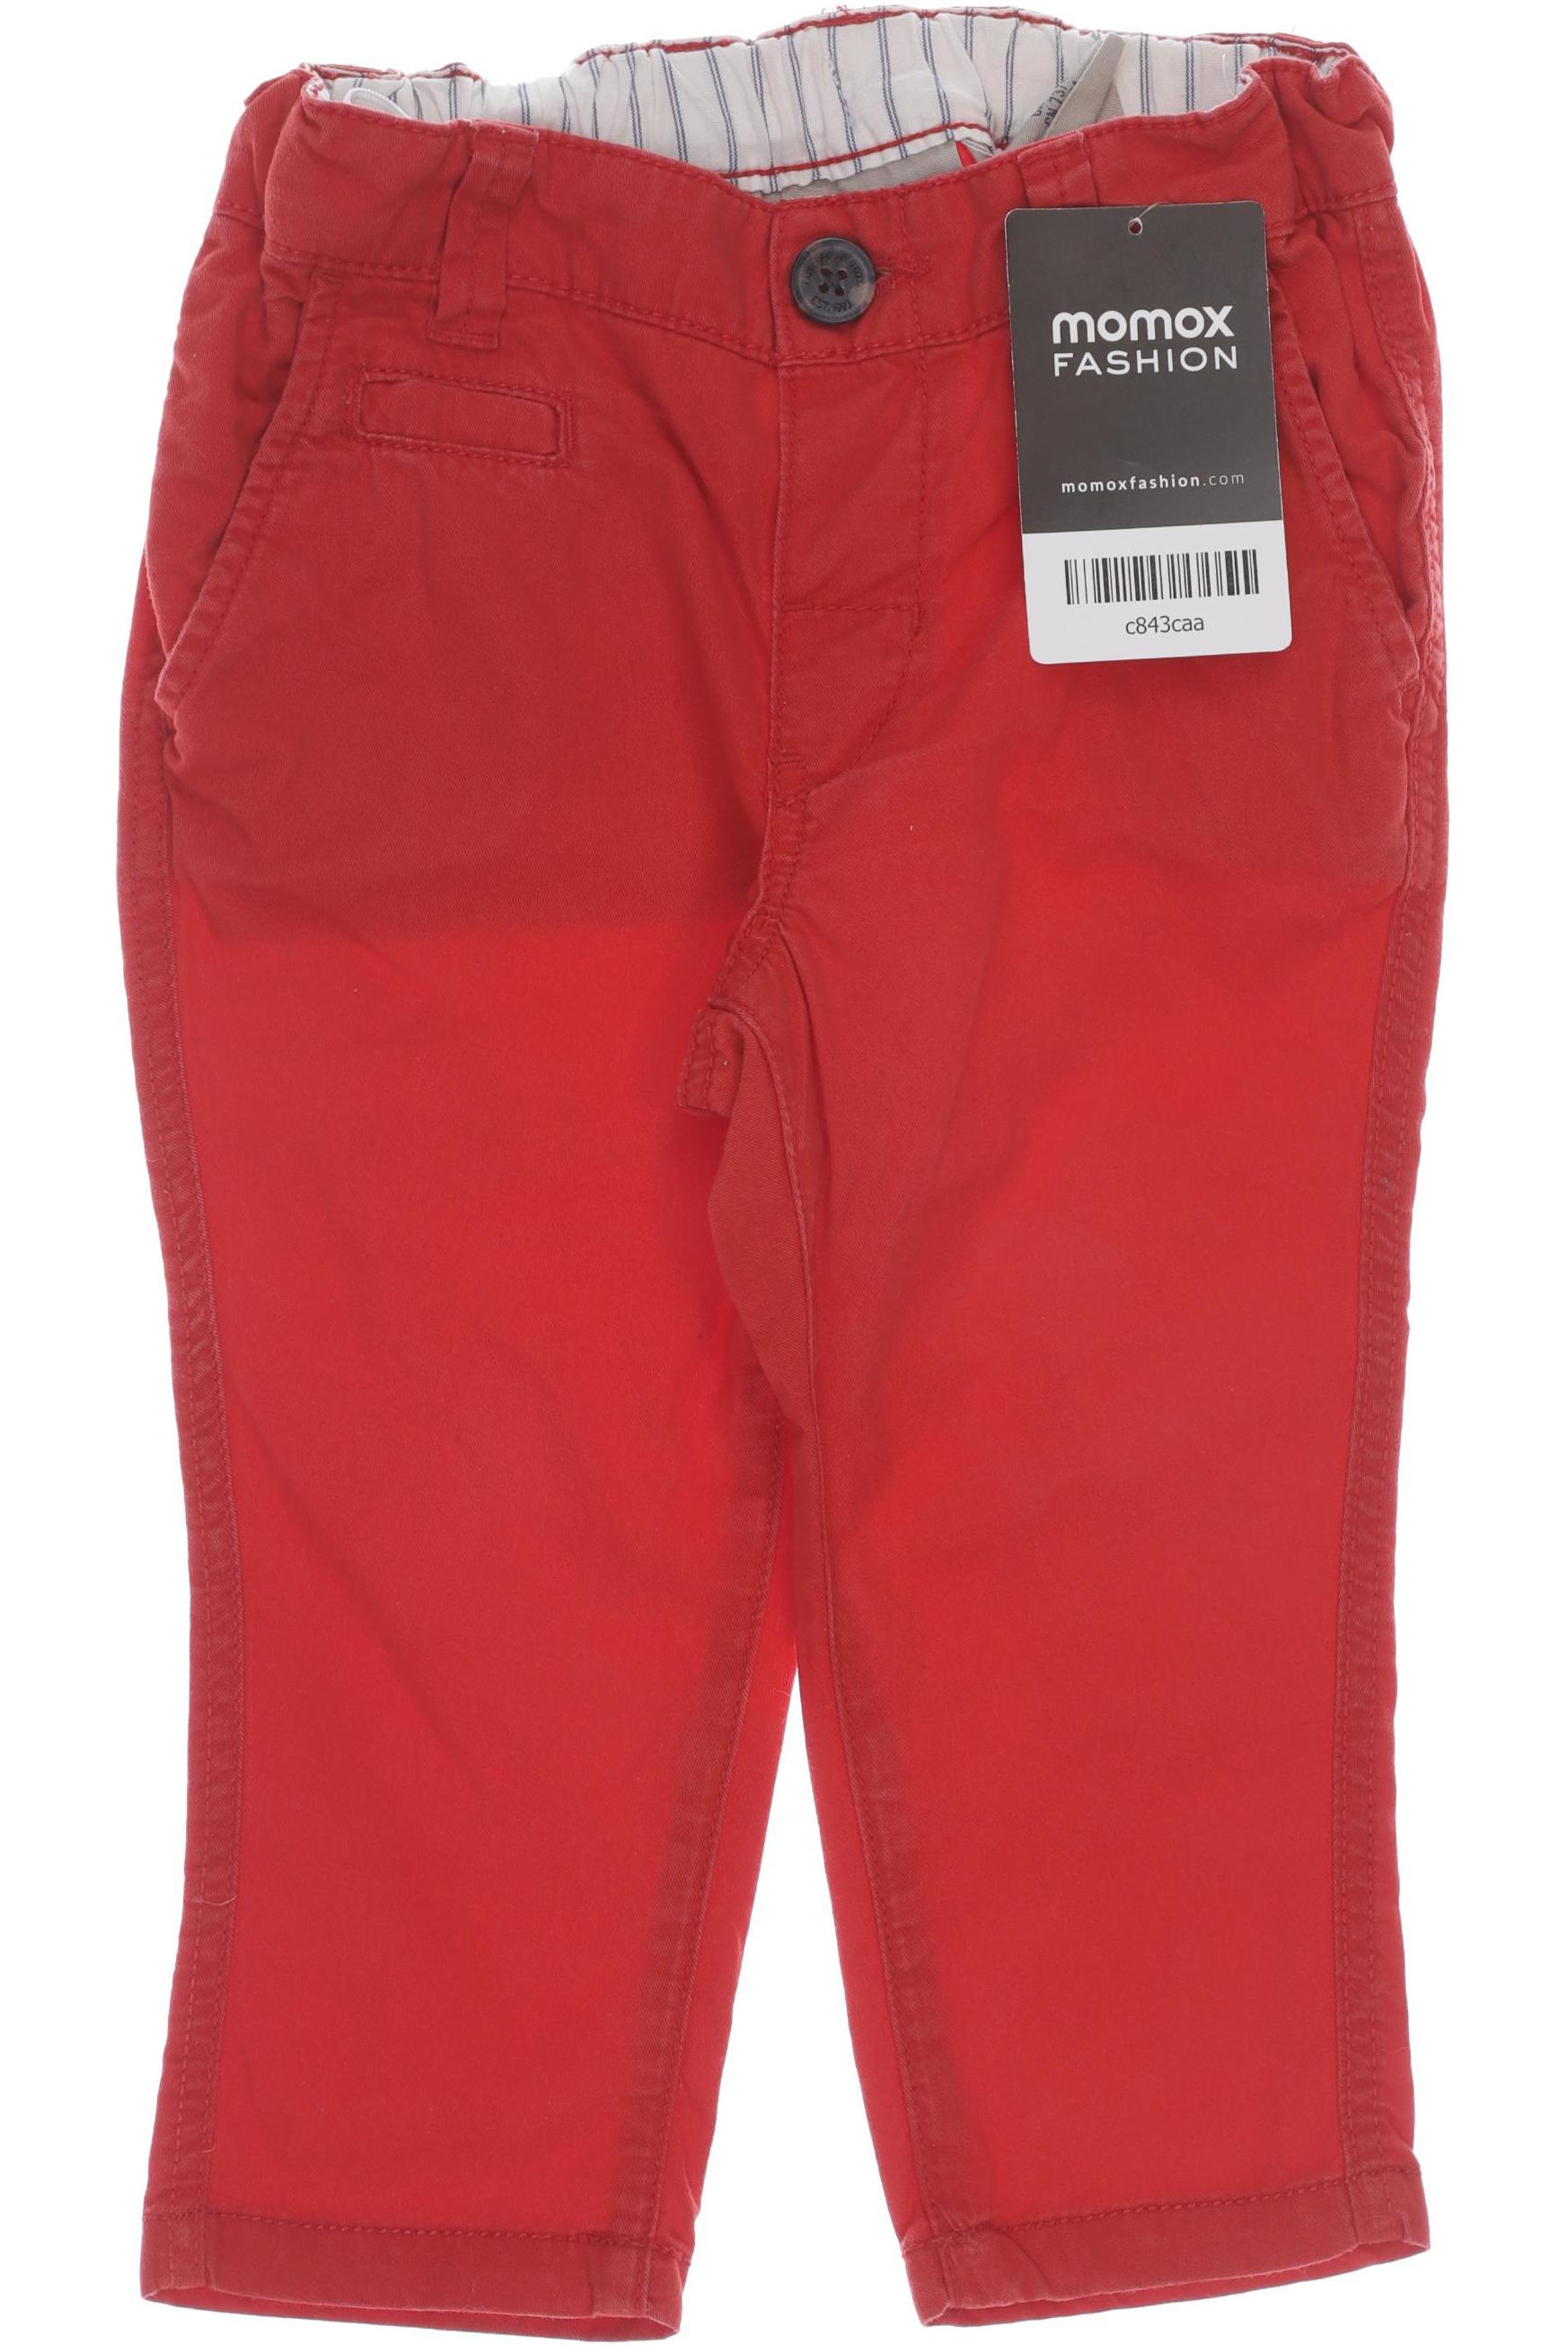 H&M Jungen Jeans, rot von H&M